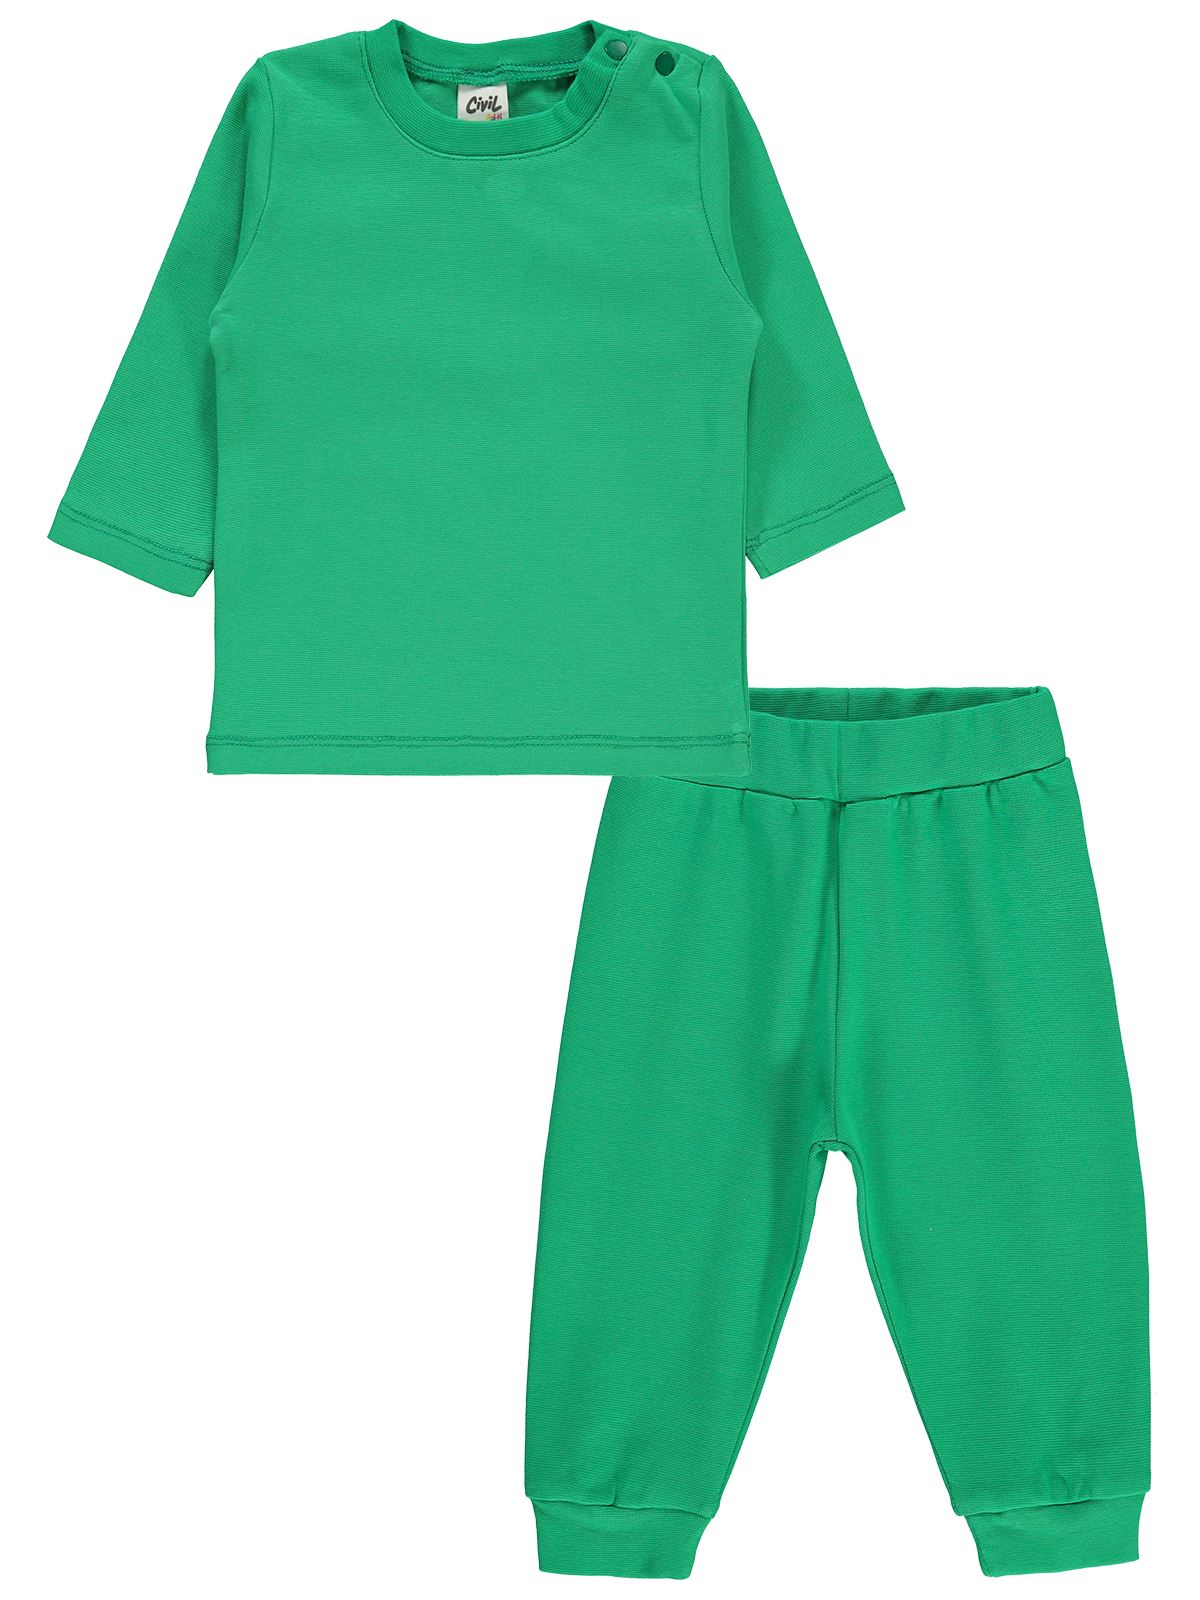 Civil Baby Bebek Pijama Takımı 6-18 Ay Koyu Yeşil